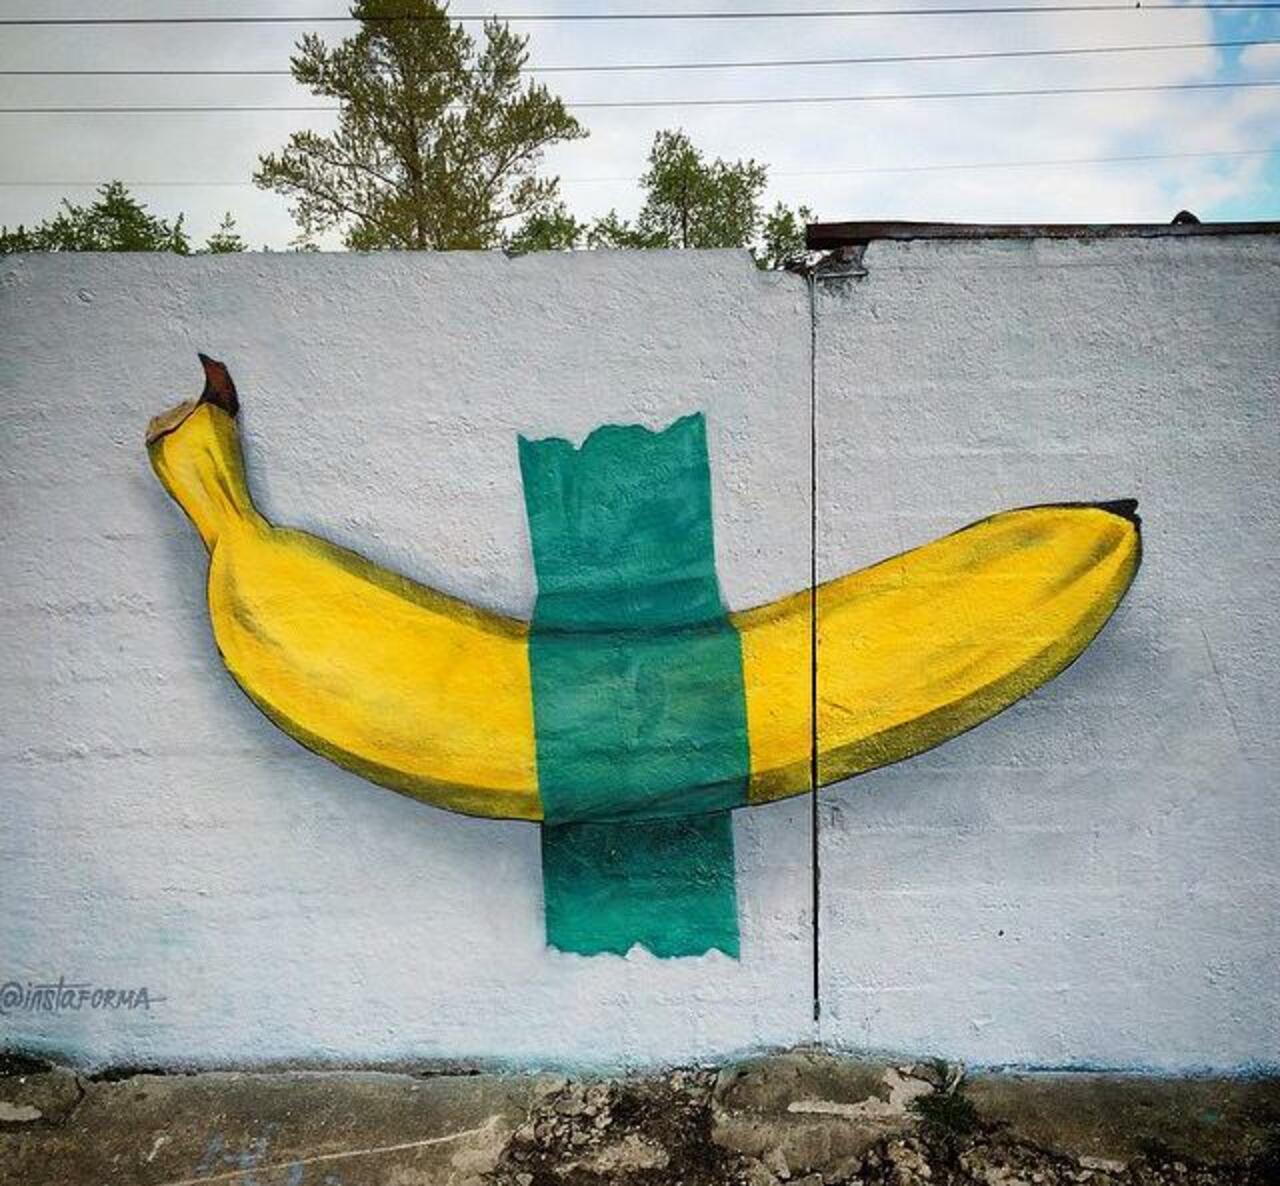 New Street Art by Ches 

#art #arte #graffiti #streetart http://t.co/g9HvsndJgA